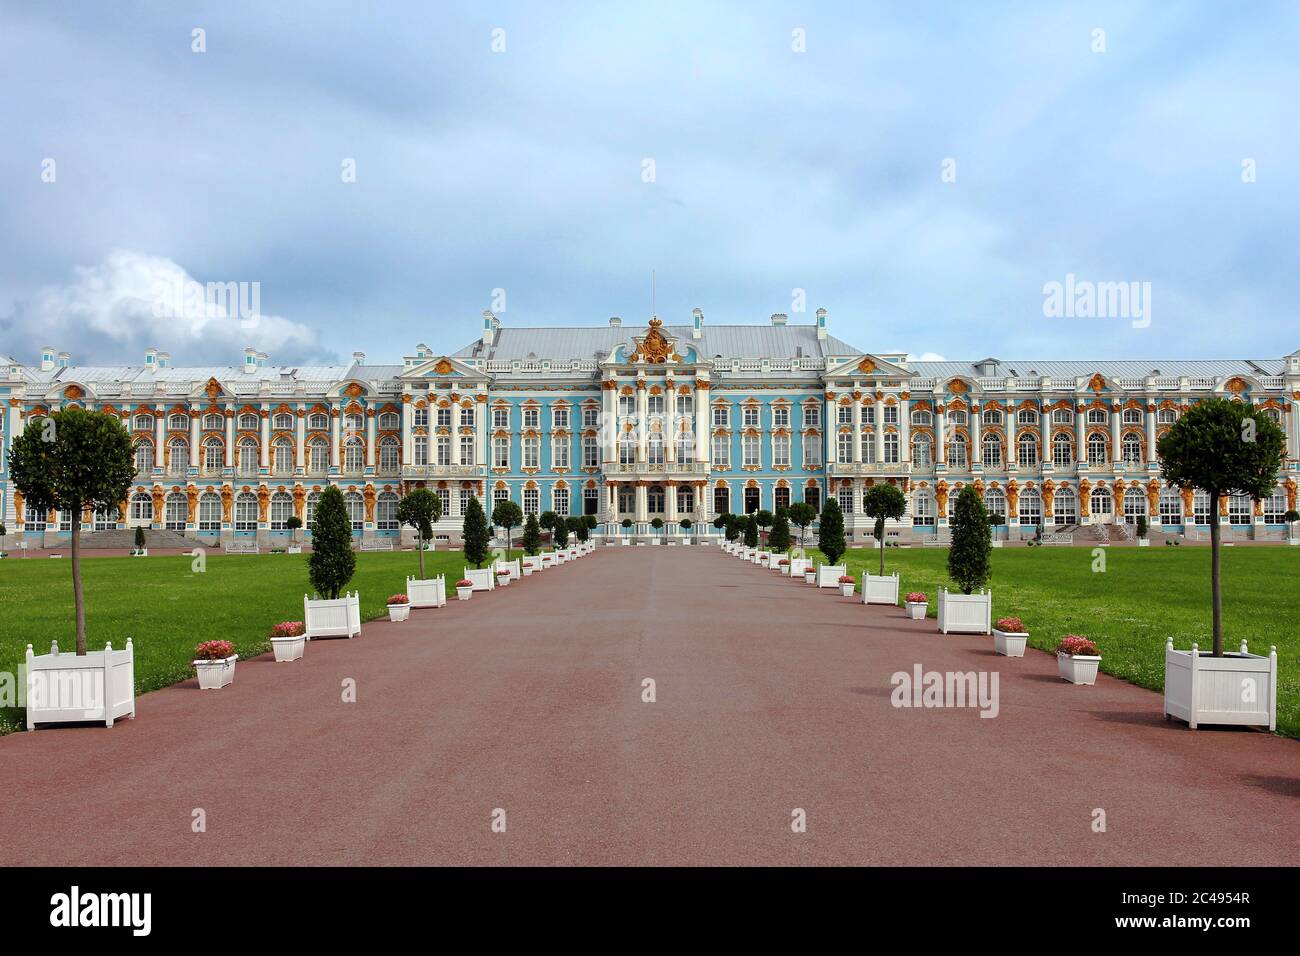 Pushkin Palace (ufficialmente indicato come Tsarskoe Selo = Villaggio di Tsar) è un sontuoso palazzo imperiale costruito nel 1752 per Tsarina Elizabeth, che il nome Foto Stock